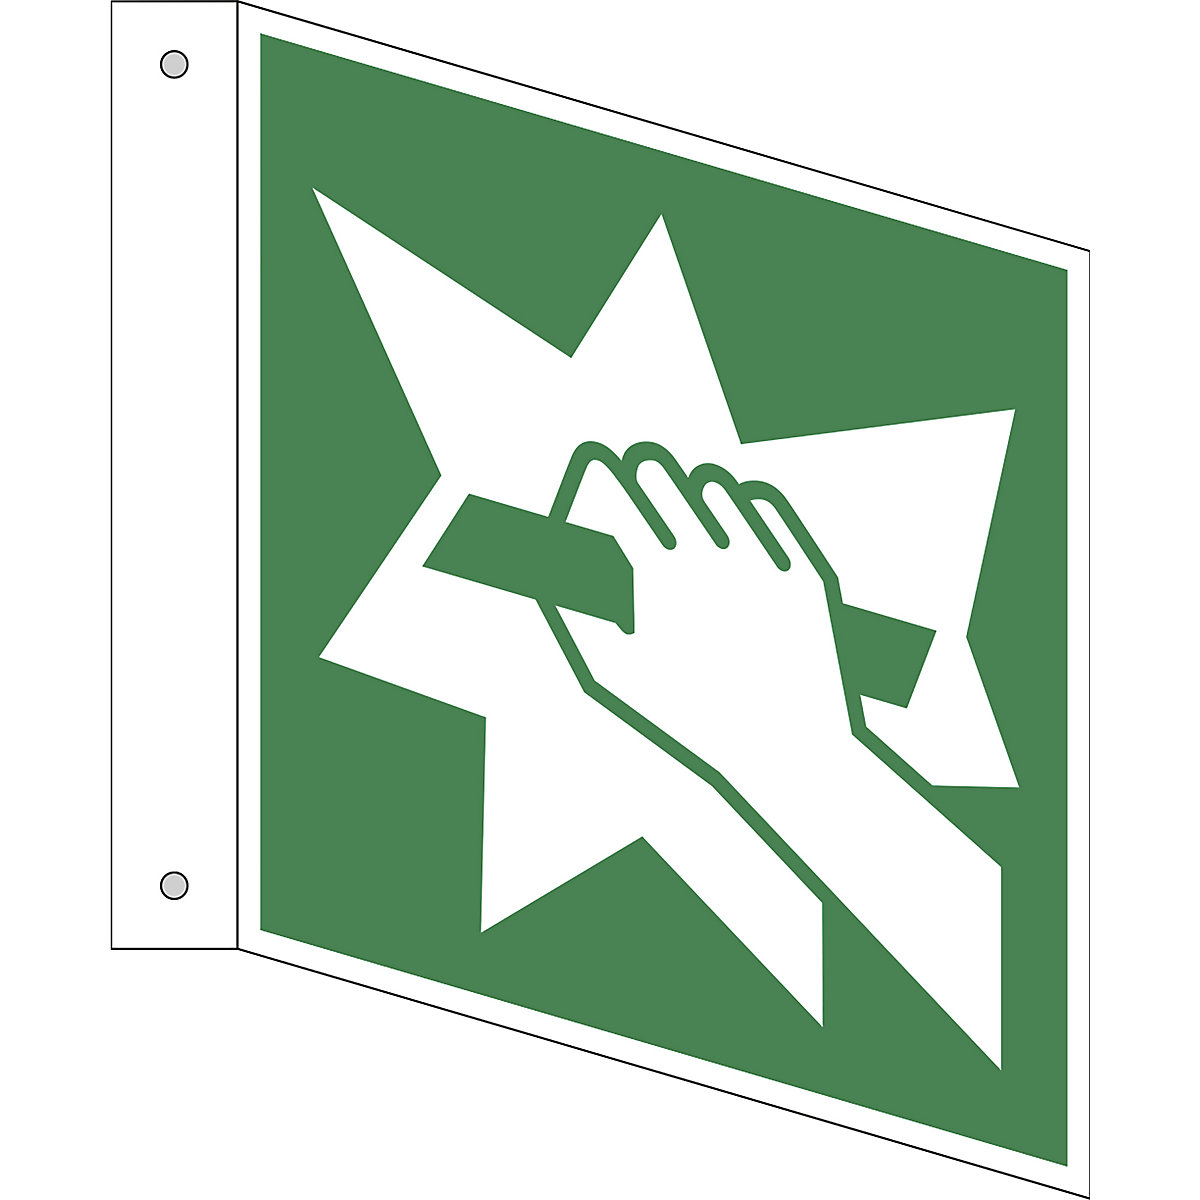 Úniková značka, Zařízení pro nouzový východ, bal.j. 10 ks, hliník, vlajkový štítek, 150 x 150 mm